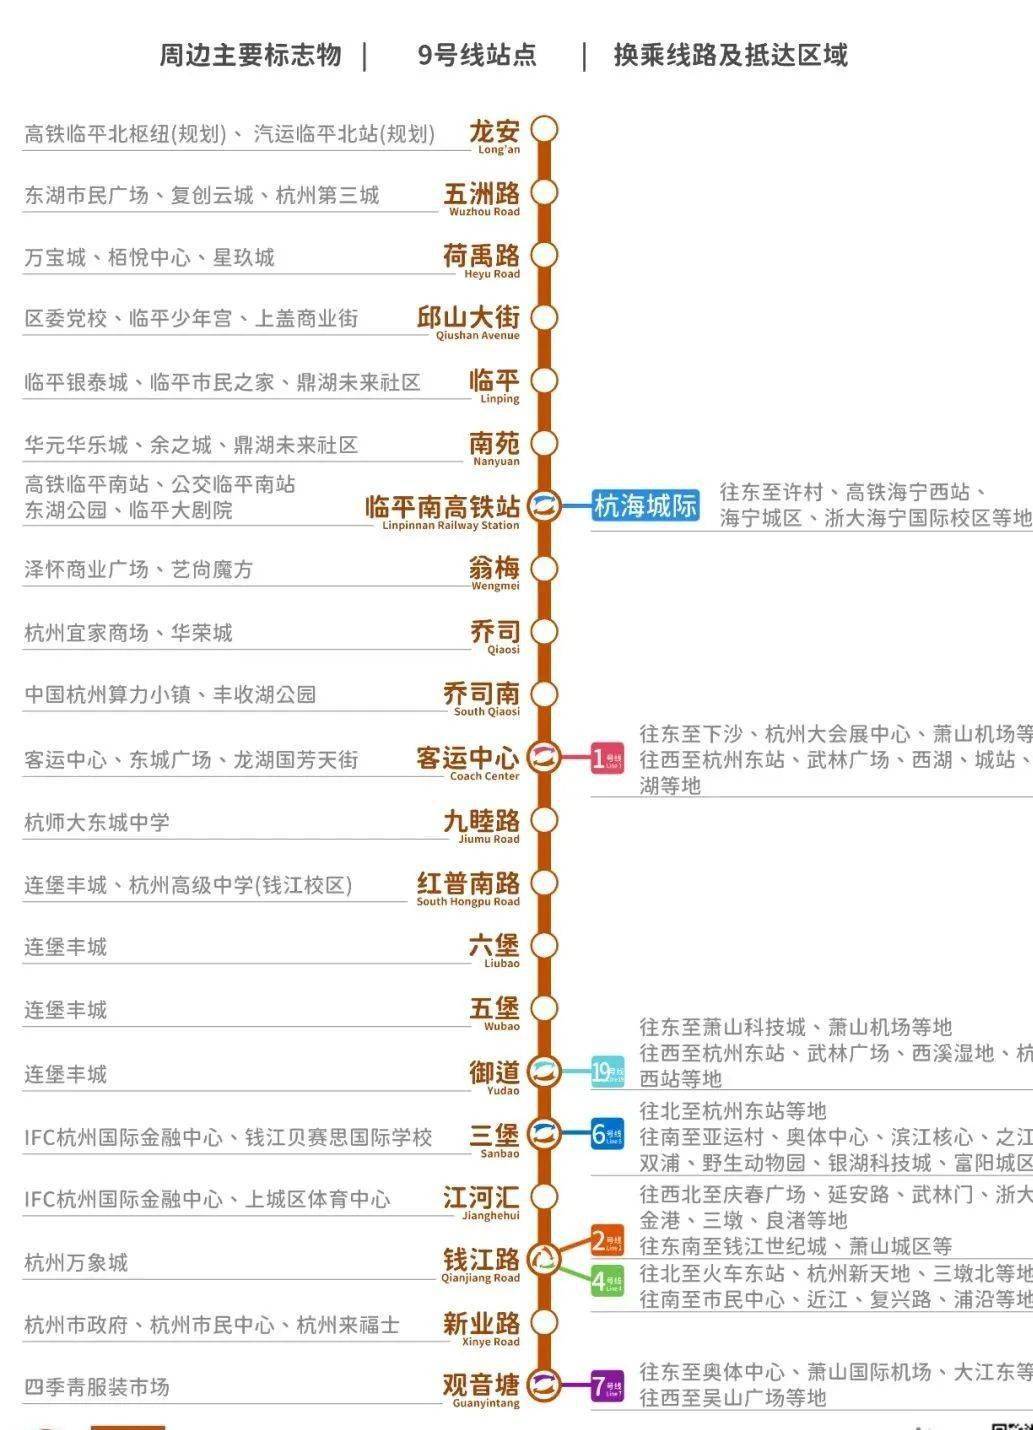 杭州地铁9号线一期南段4月1日上午10:00开通运行,直通钱江新城!